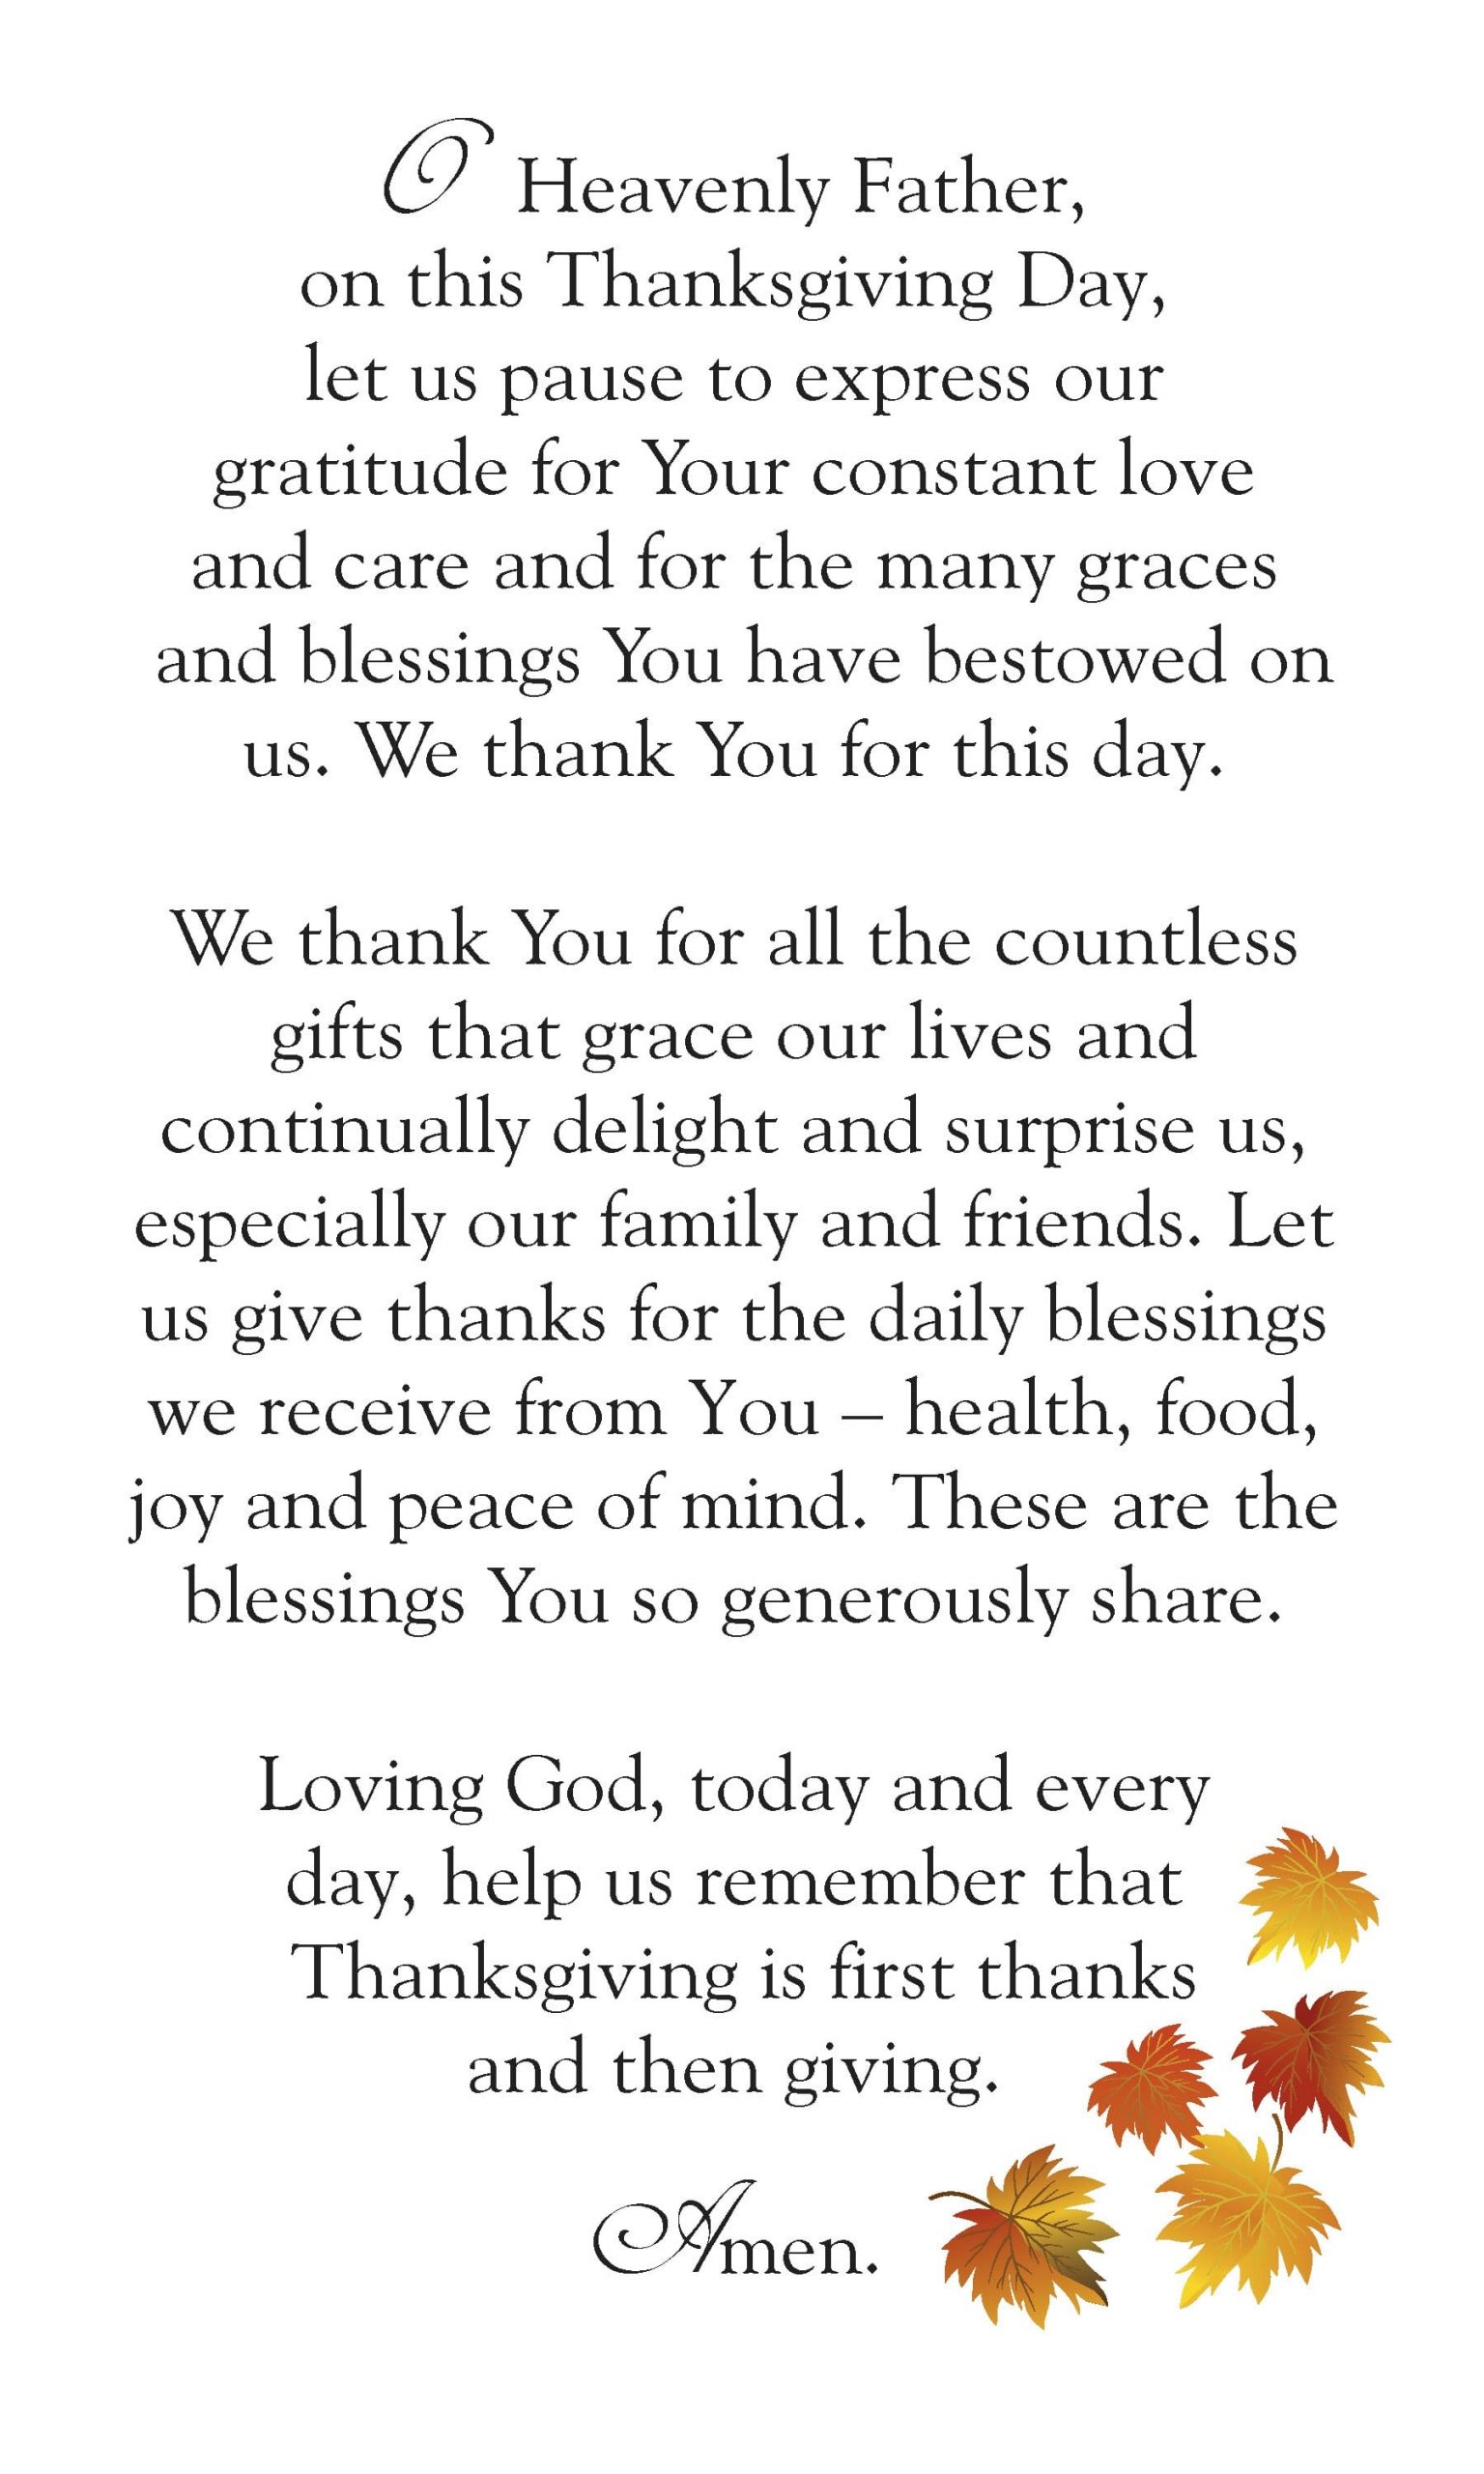 30+ Best Thanksgiving Prayer to Get You in the Grateful Spirit